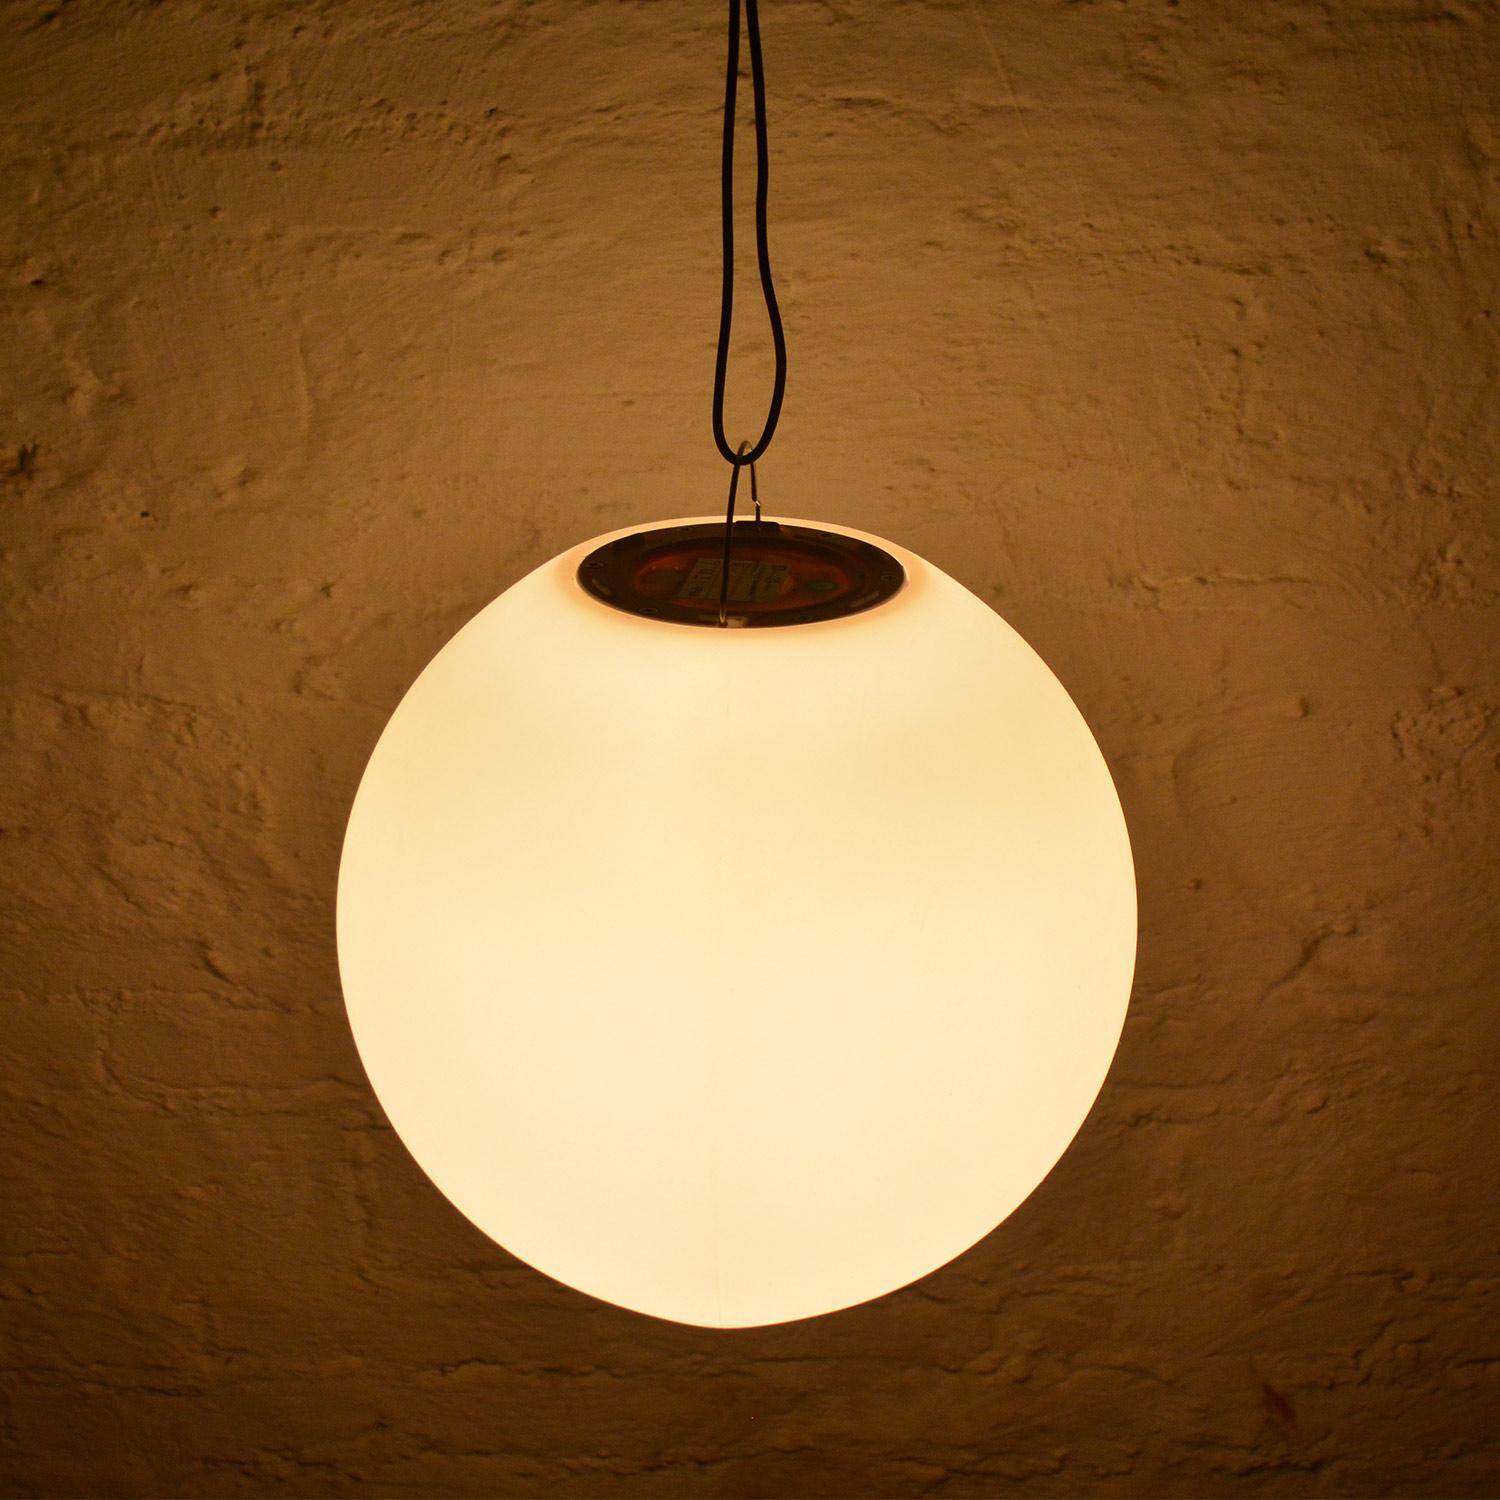 Boule LED 50cm – Sphère décorative lumineuse, Ø50cm, blanc chaud, commande à distance Photo6